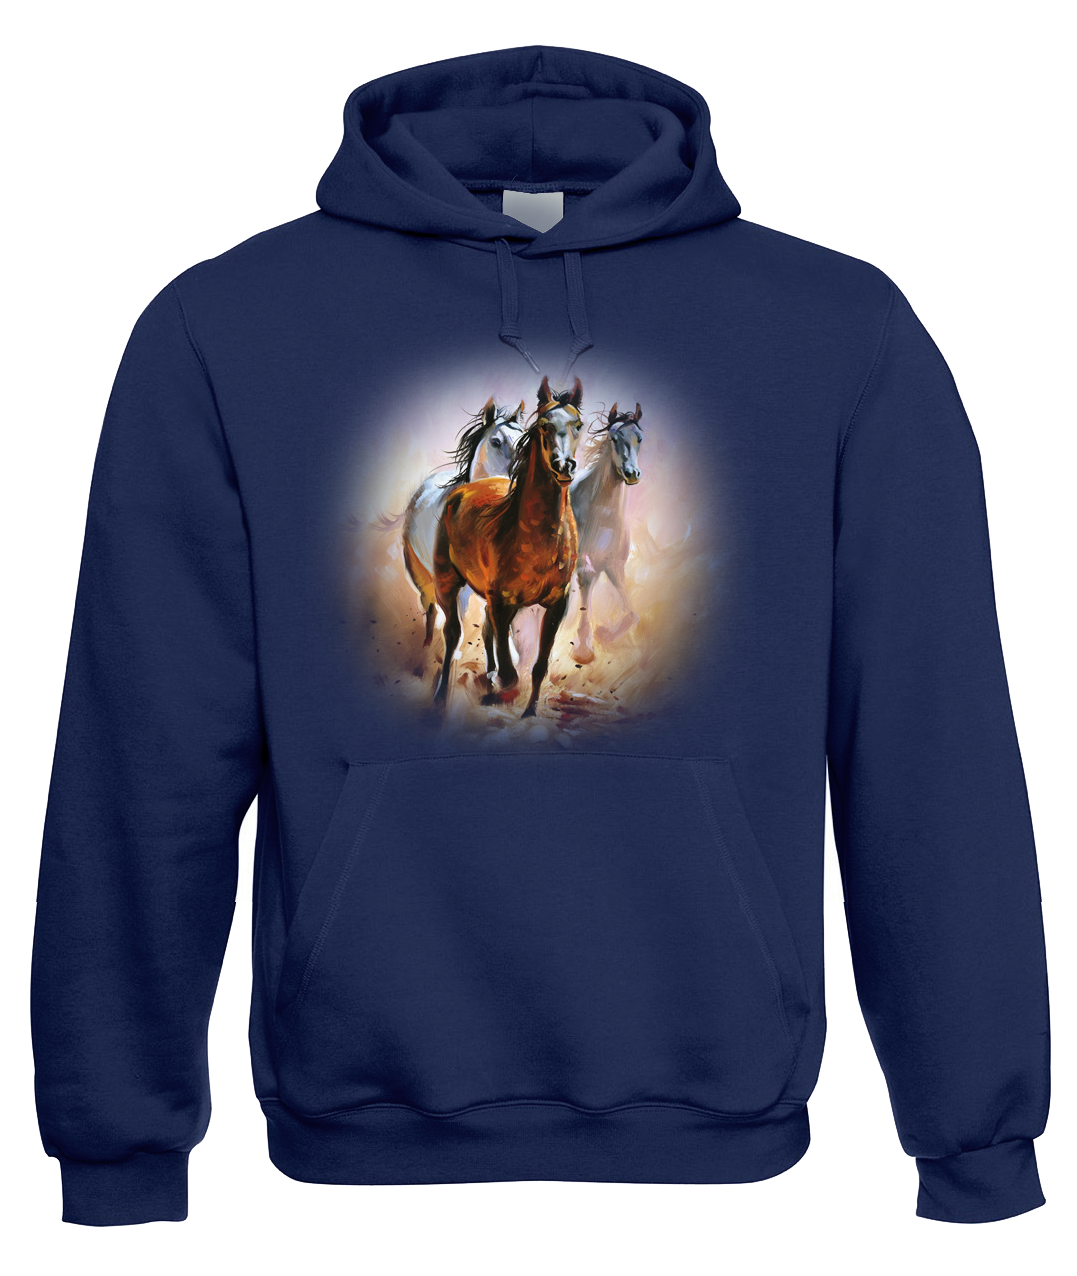 Mikina s koněm - Malované koně Velikost: M, Barva: Tmavě modrá